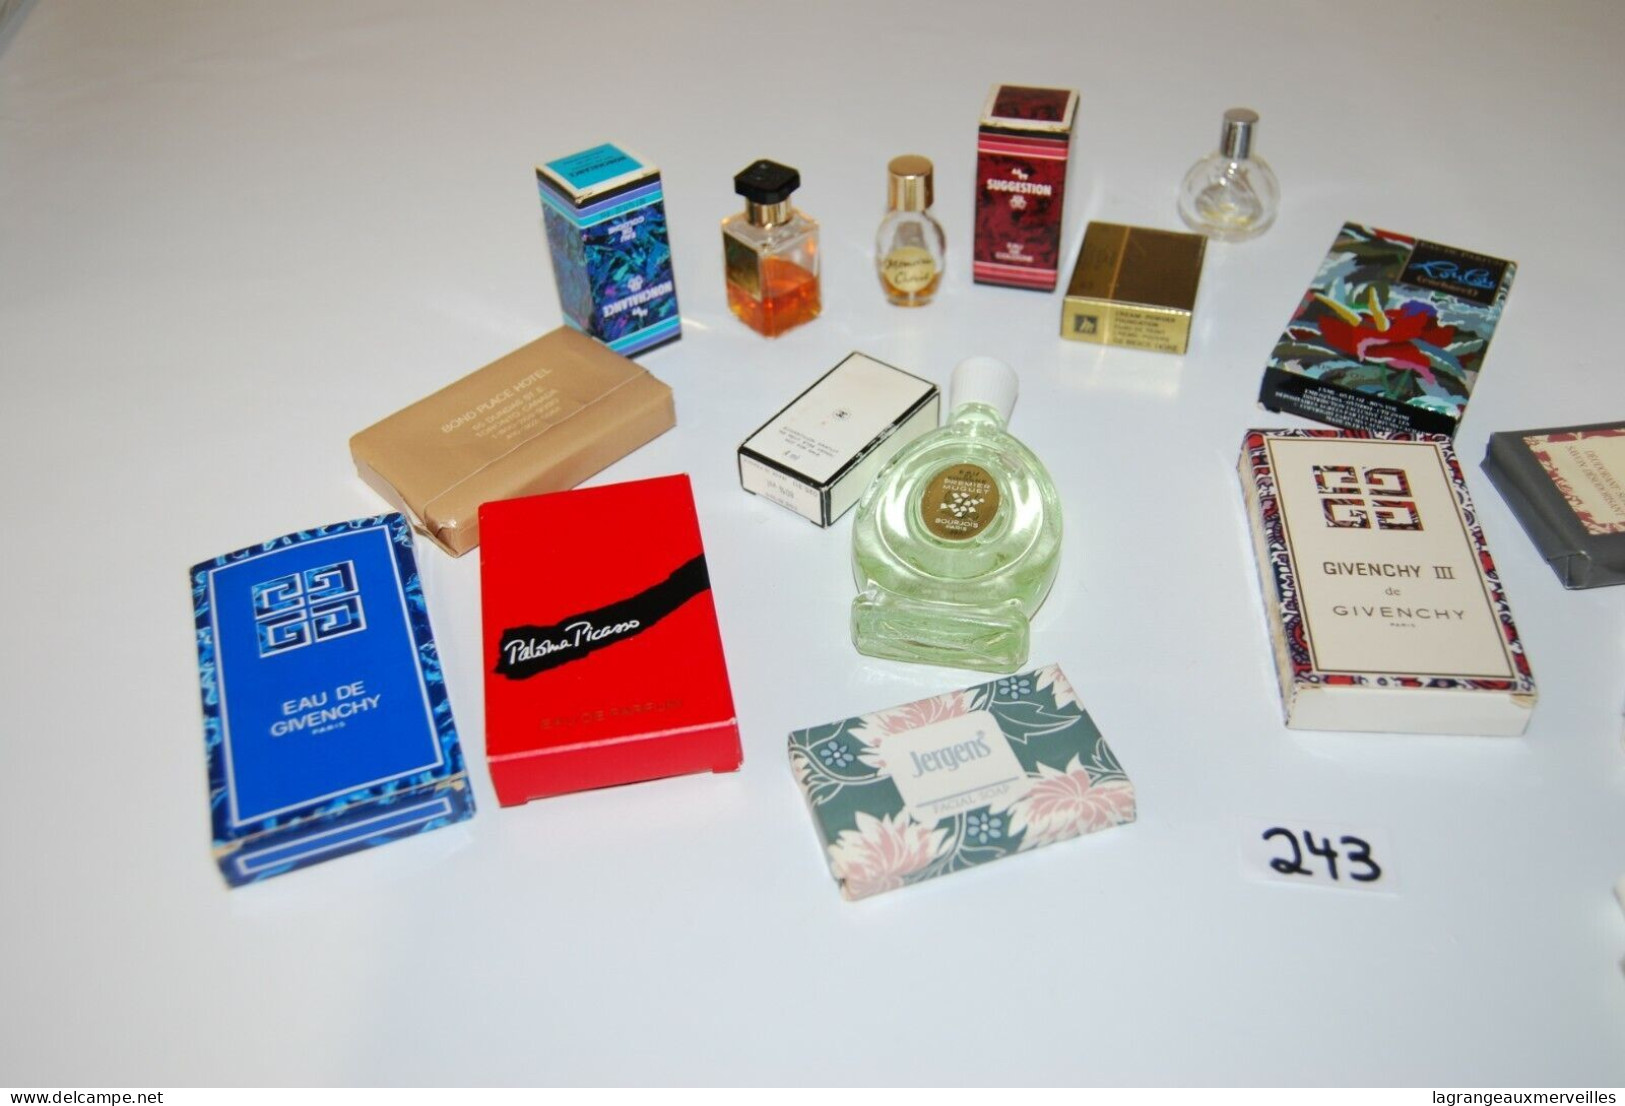 C243 + 15 objets - Miniatures parfum - savon - beauté - de collection